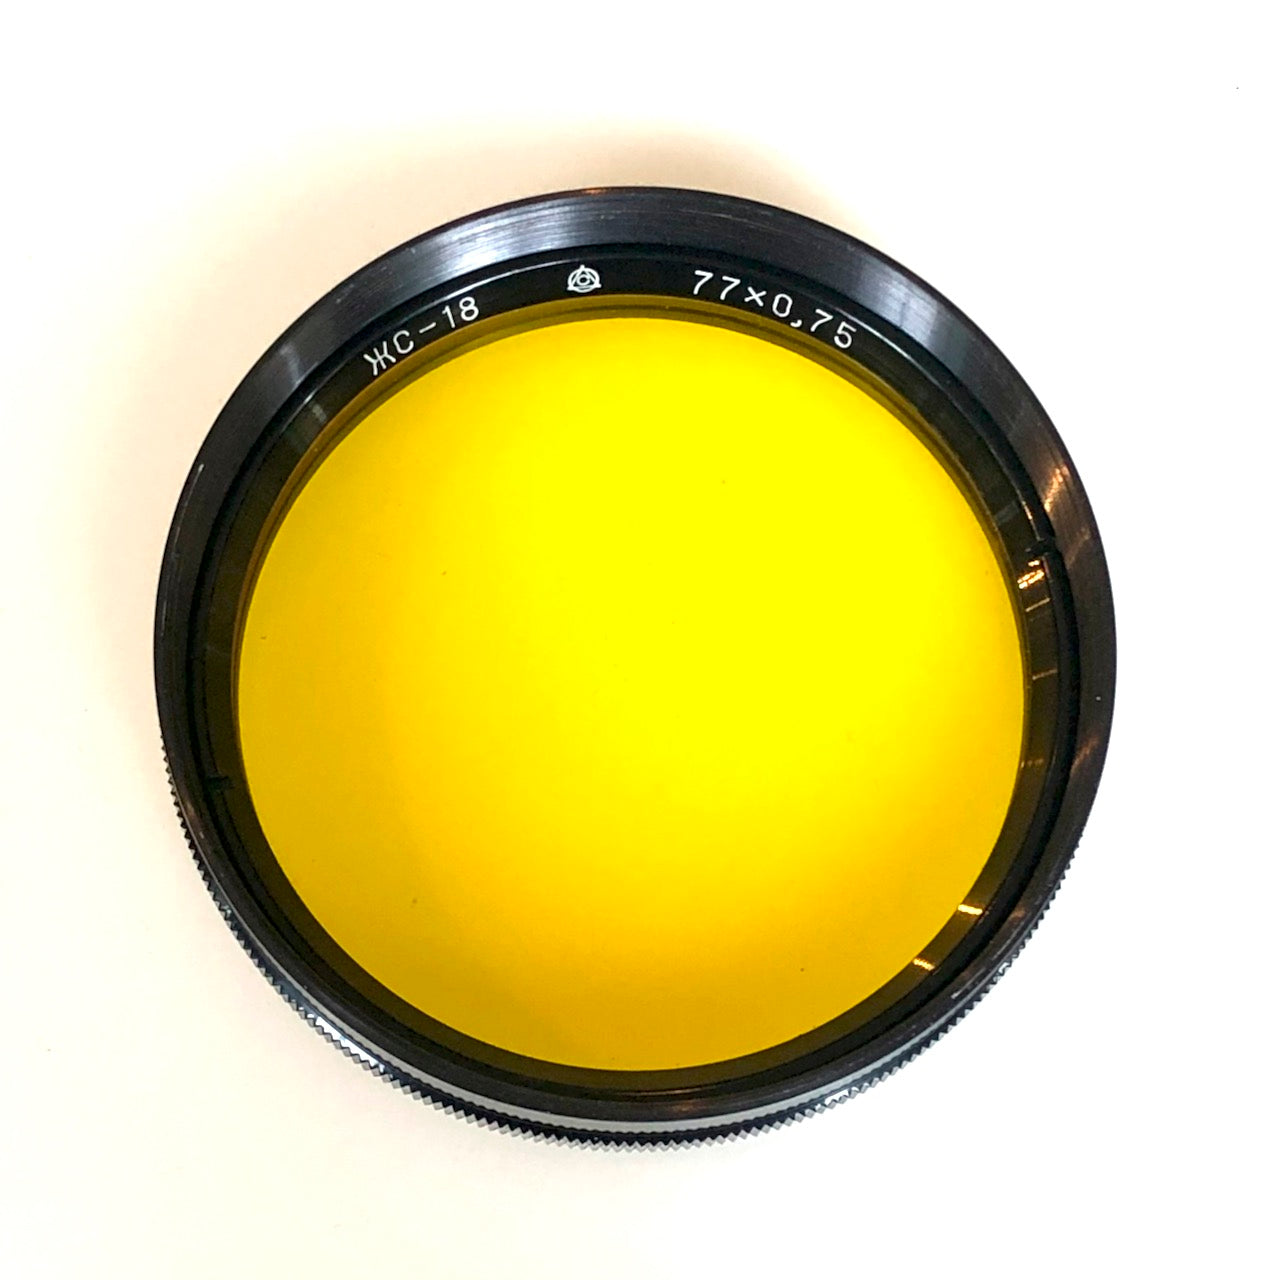 Soviet lens filters (77mm)